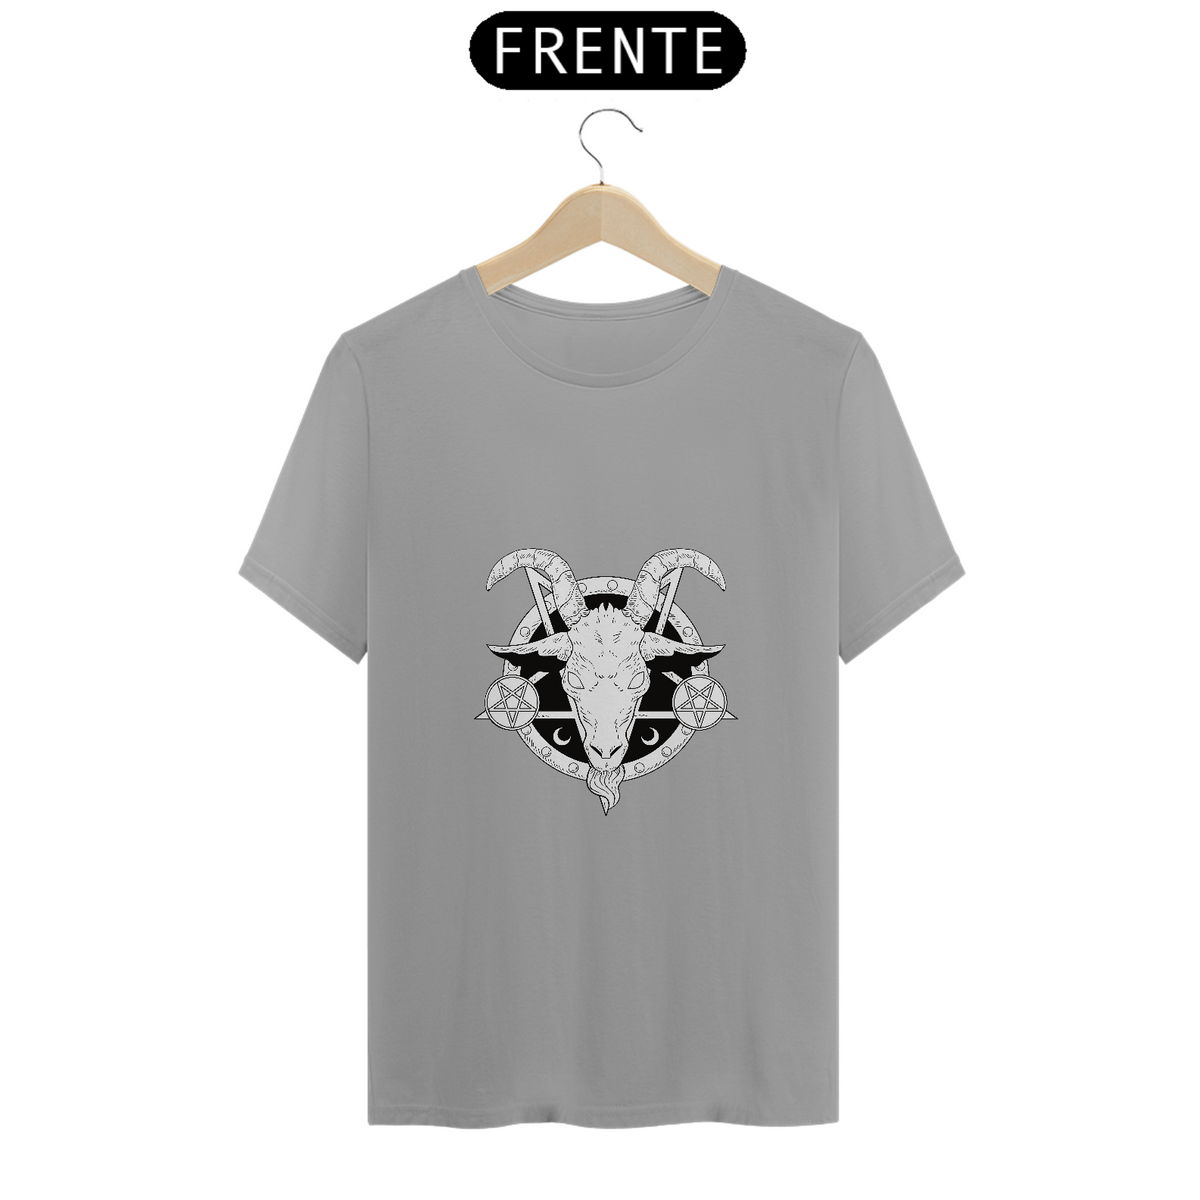 Nome do produto: Camiseta bode com pentagramas invertidos